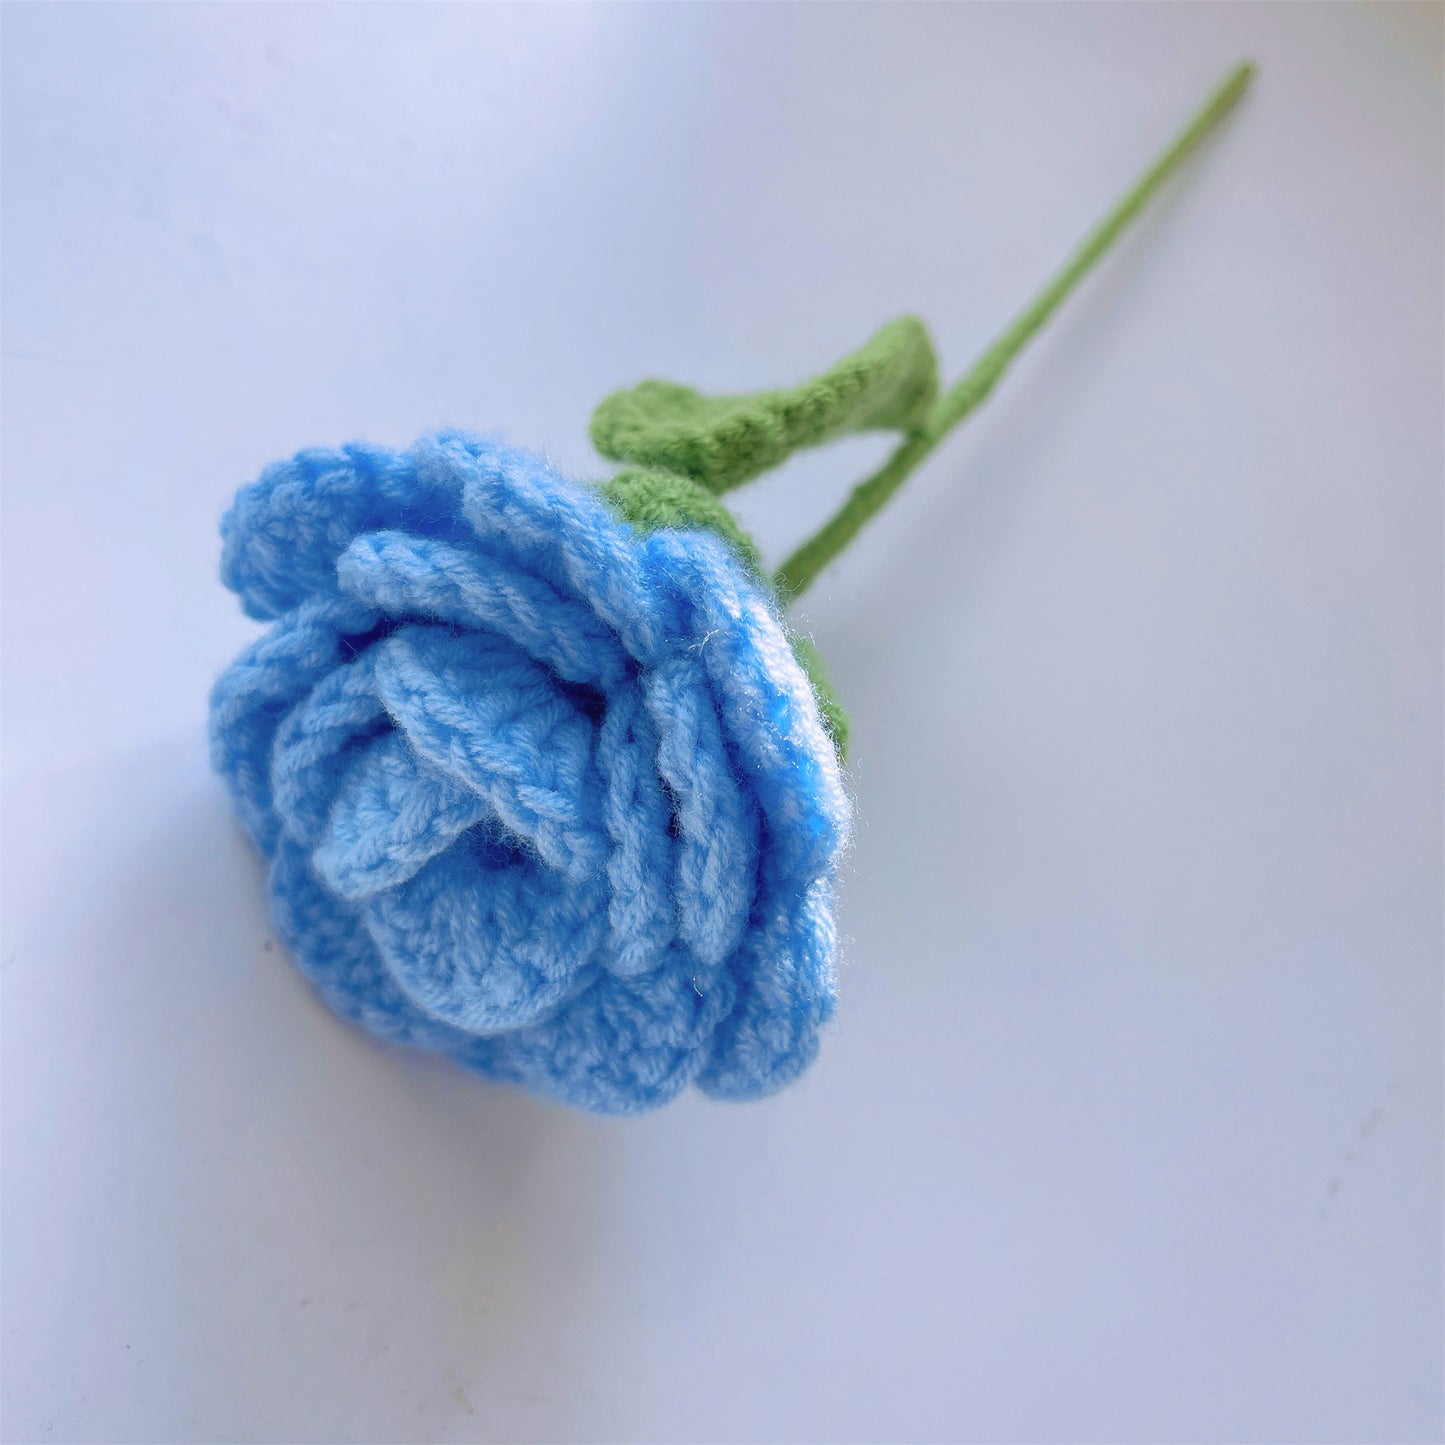 Eleganter blauer handgefertigter Häkelstrauß: Sonnenblumen, Tulpen, Puffs und Rosen